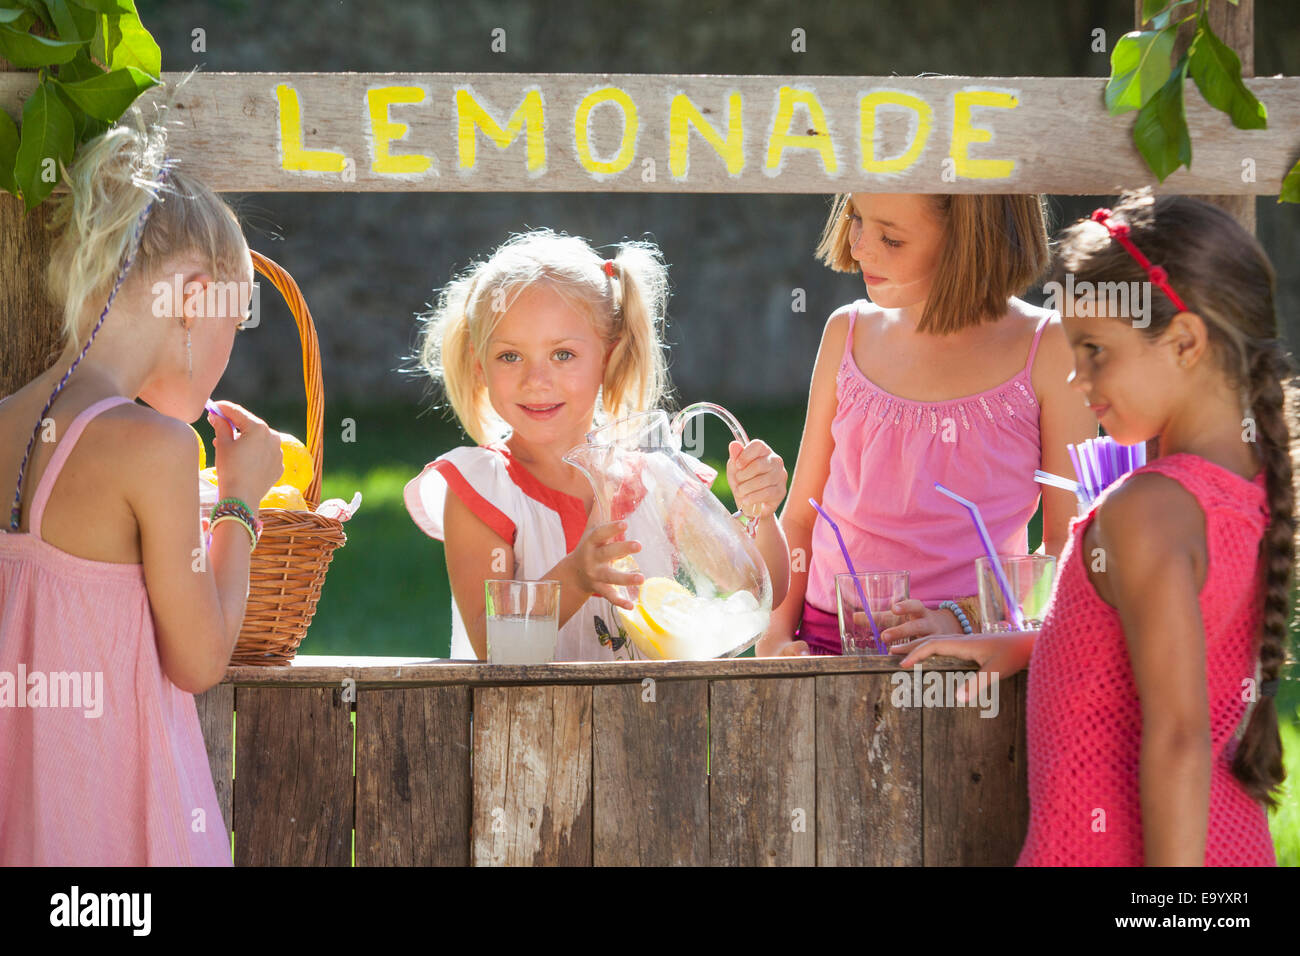 Ritratti di quattro ragazze a lemonade stand in posizione di parcheggio Foto Stock